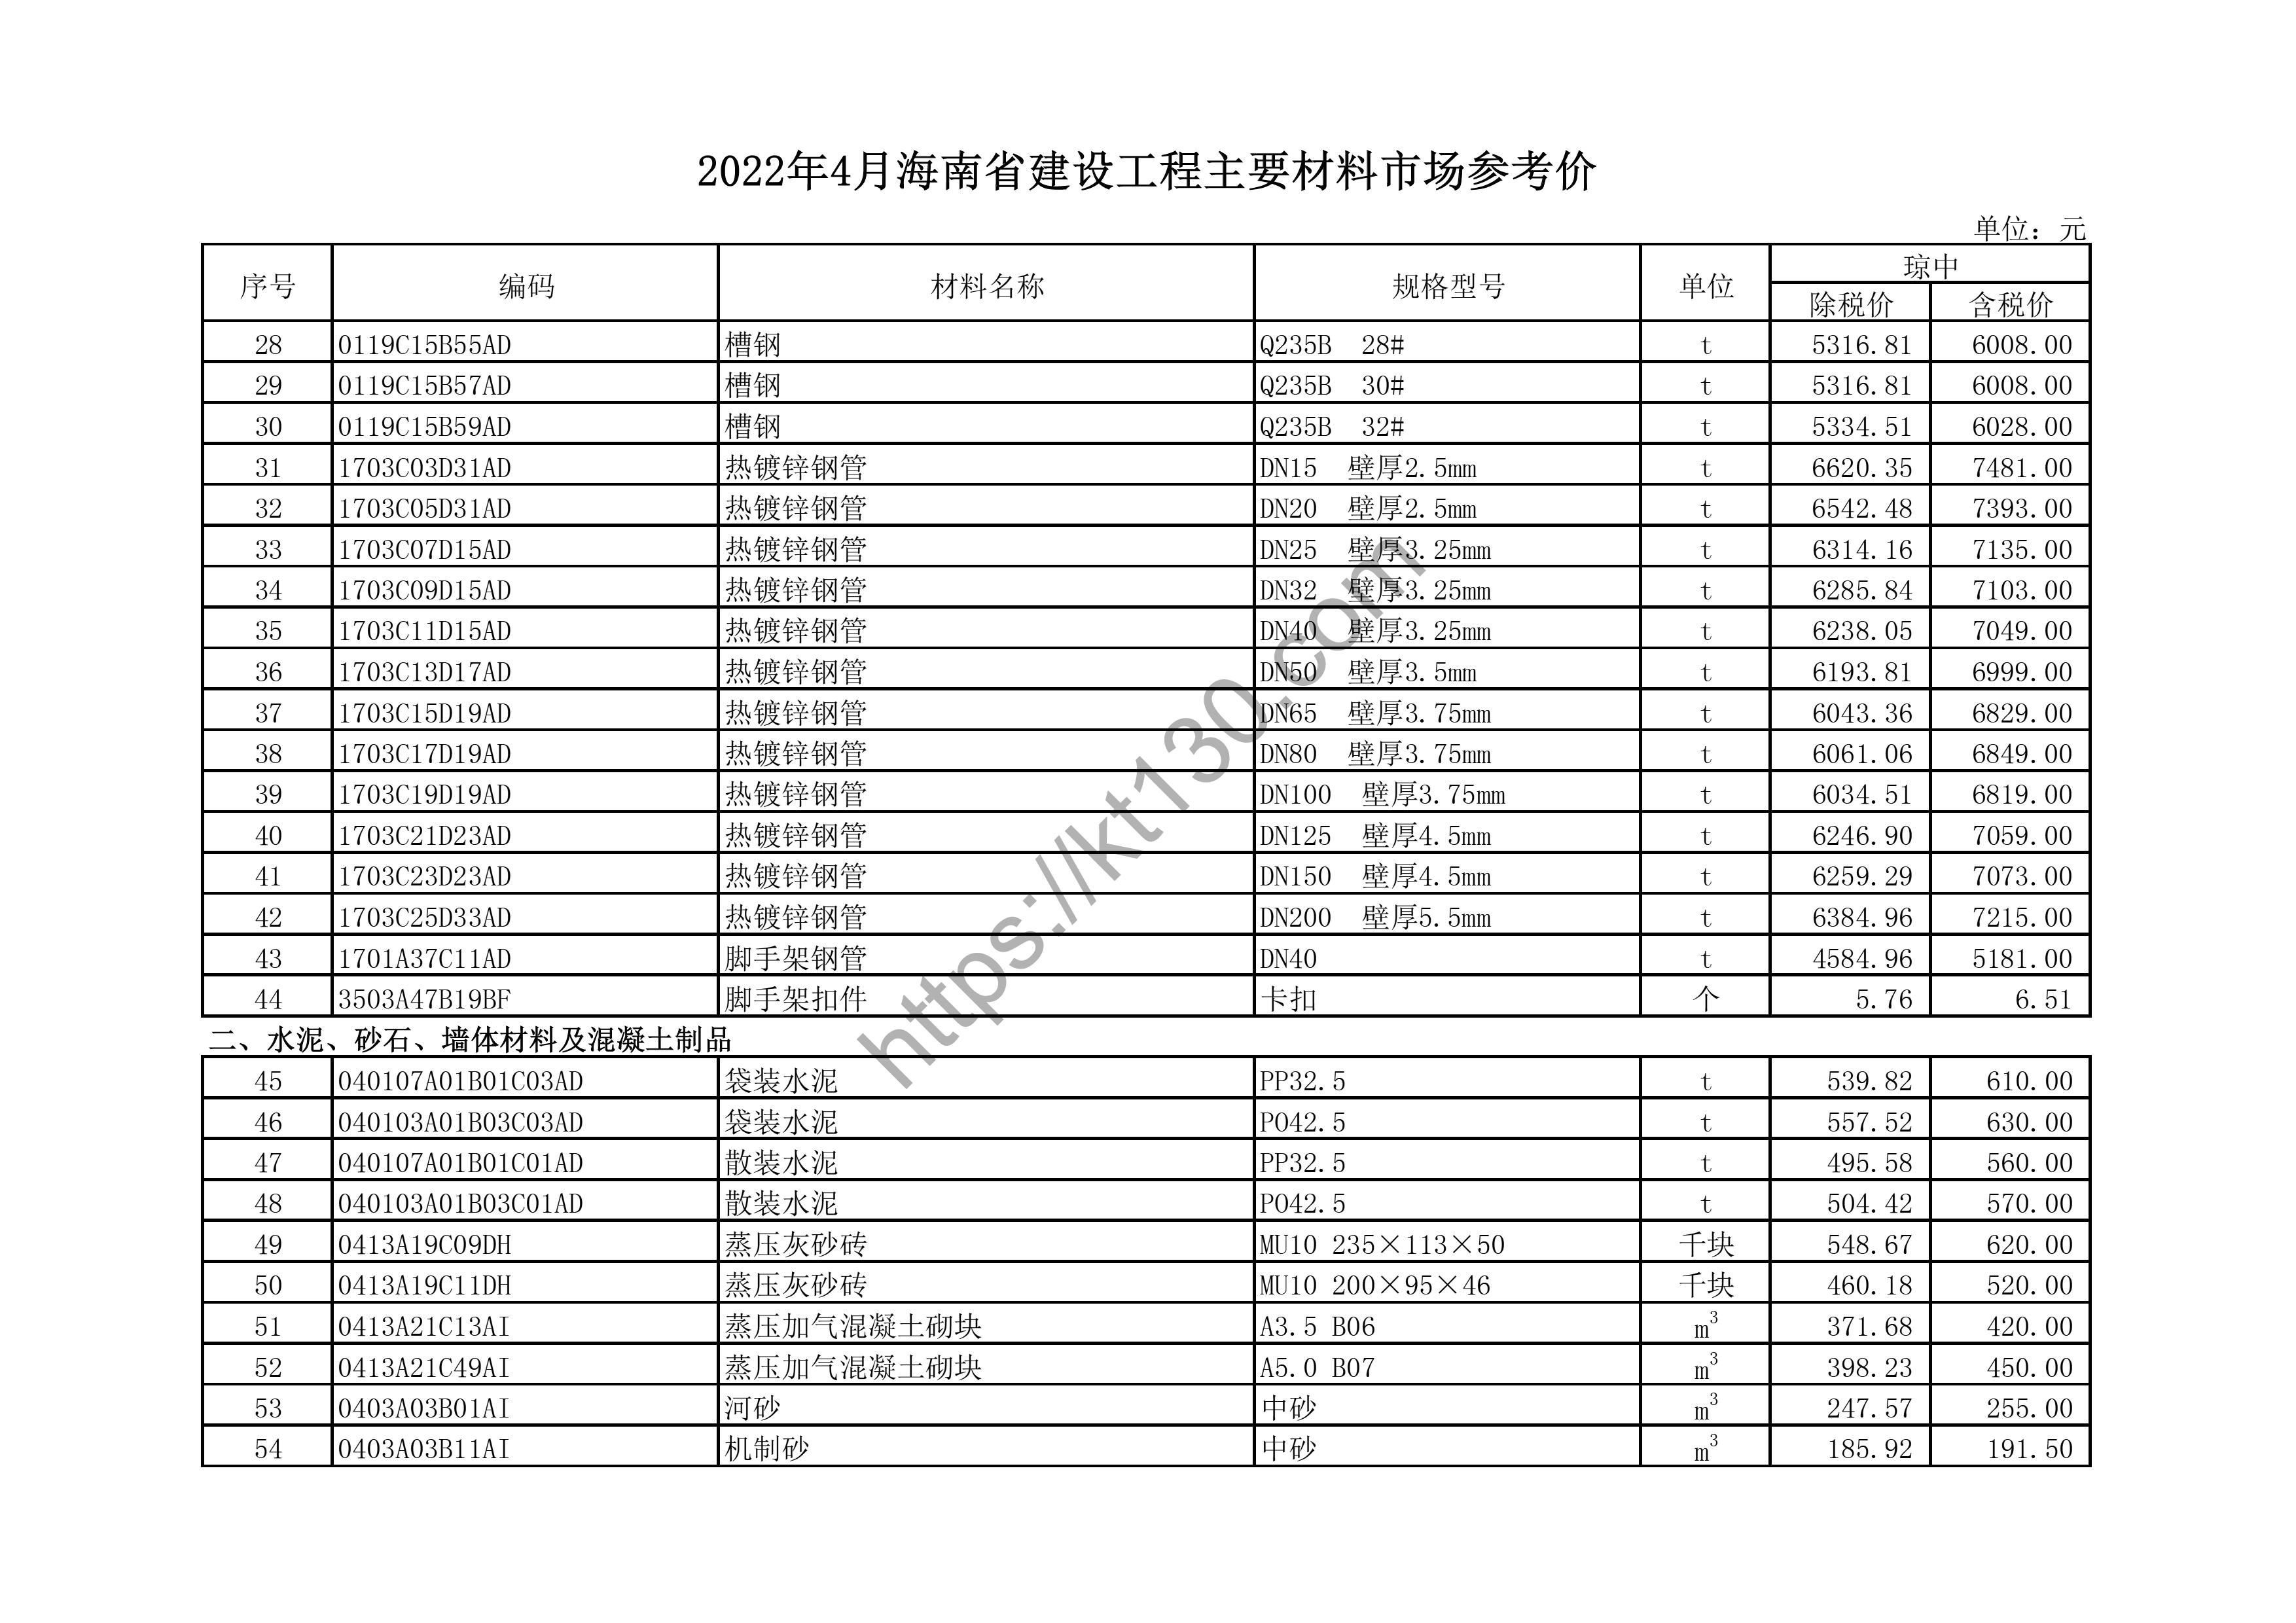 海南省2022年4月建筑材料价_特种钢化玻璃_44206